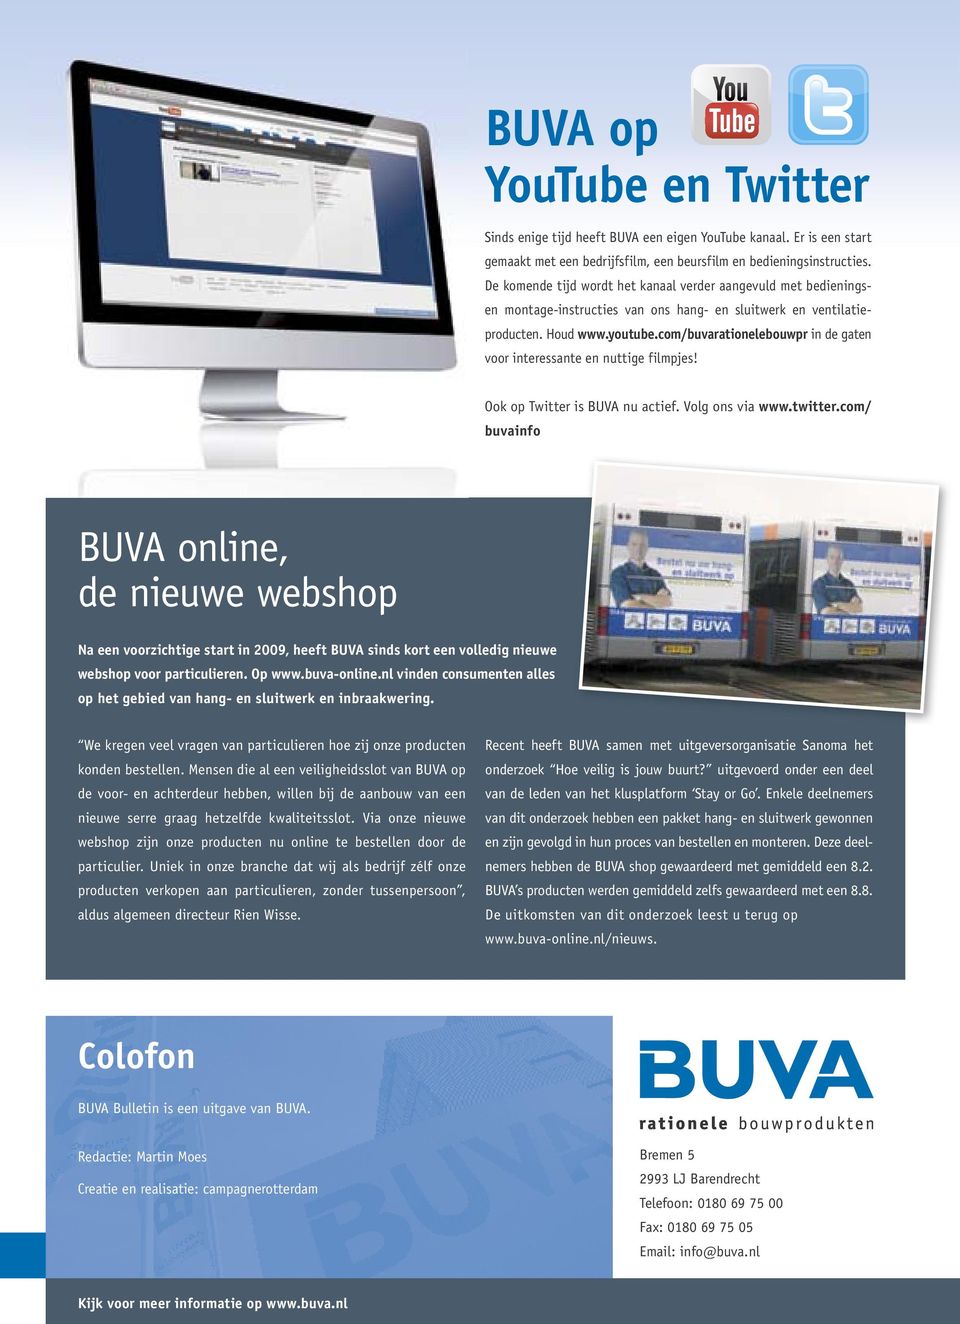 com/buvarationelebouwpr in de gaten voor interessante en nuttige filmpjes! Ook op Twitter is BUVA nu actief. Volg ons via www.twitter.